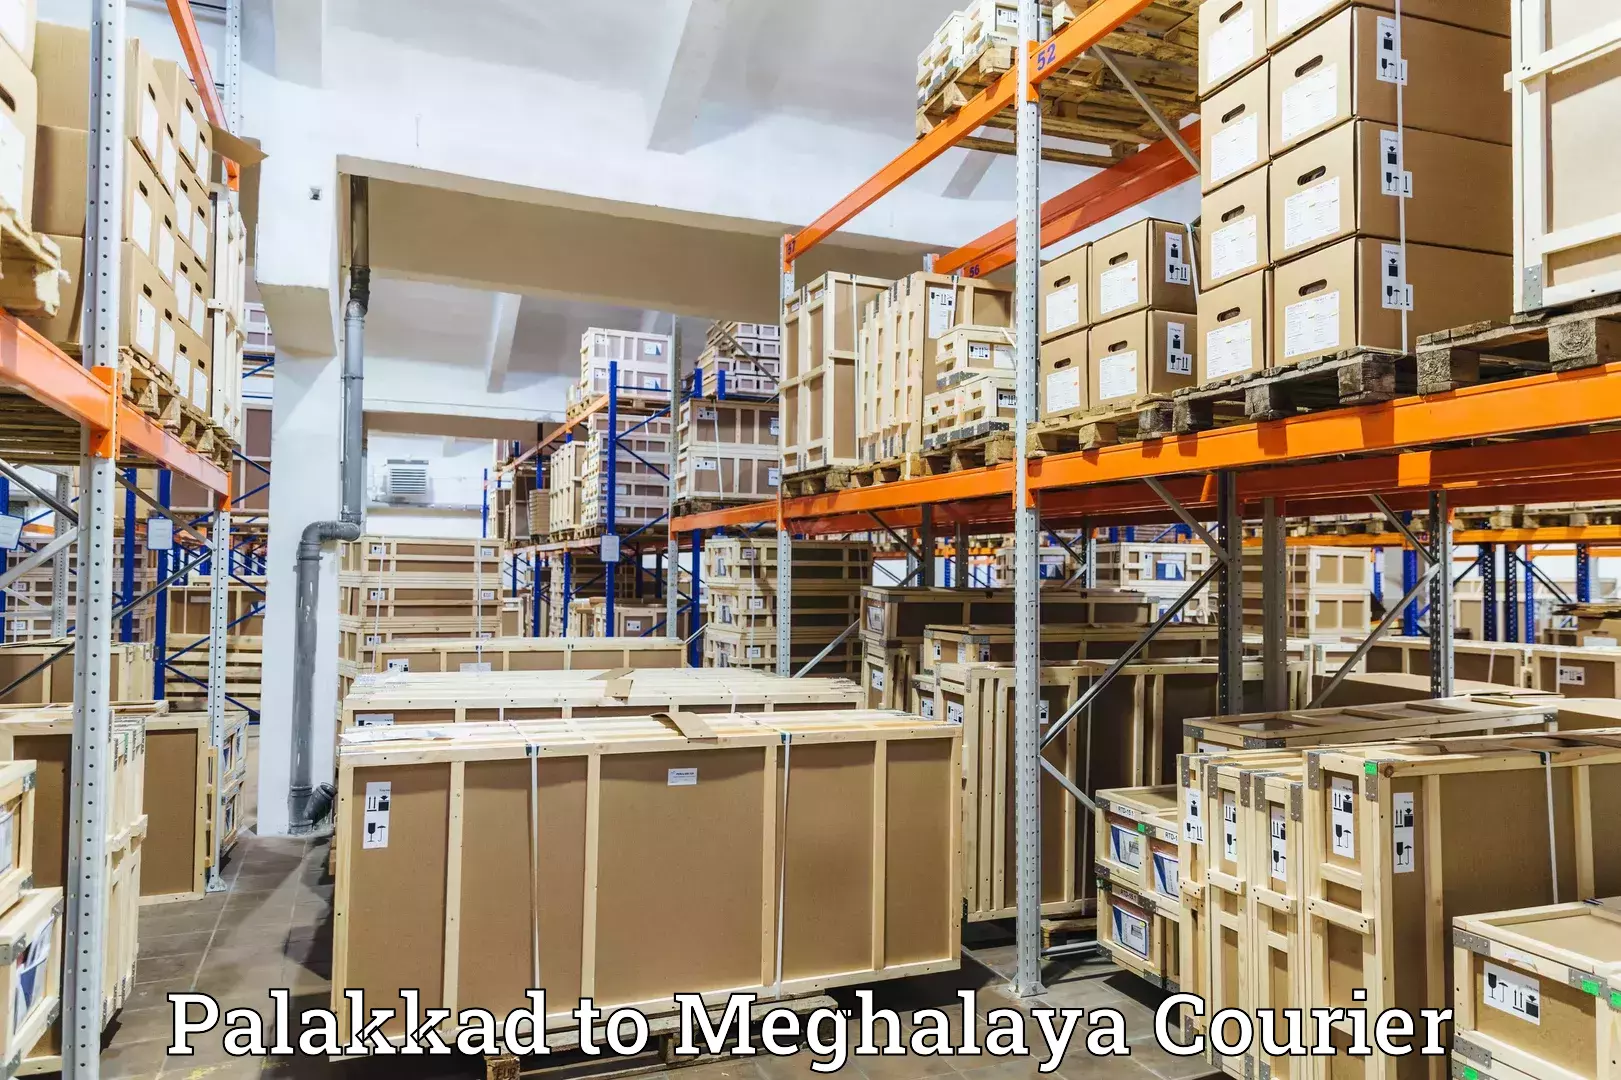 Seamless shipping experience Palakkad to Meghalaya